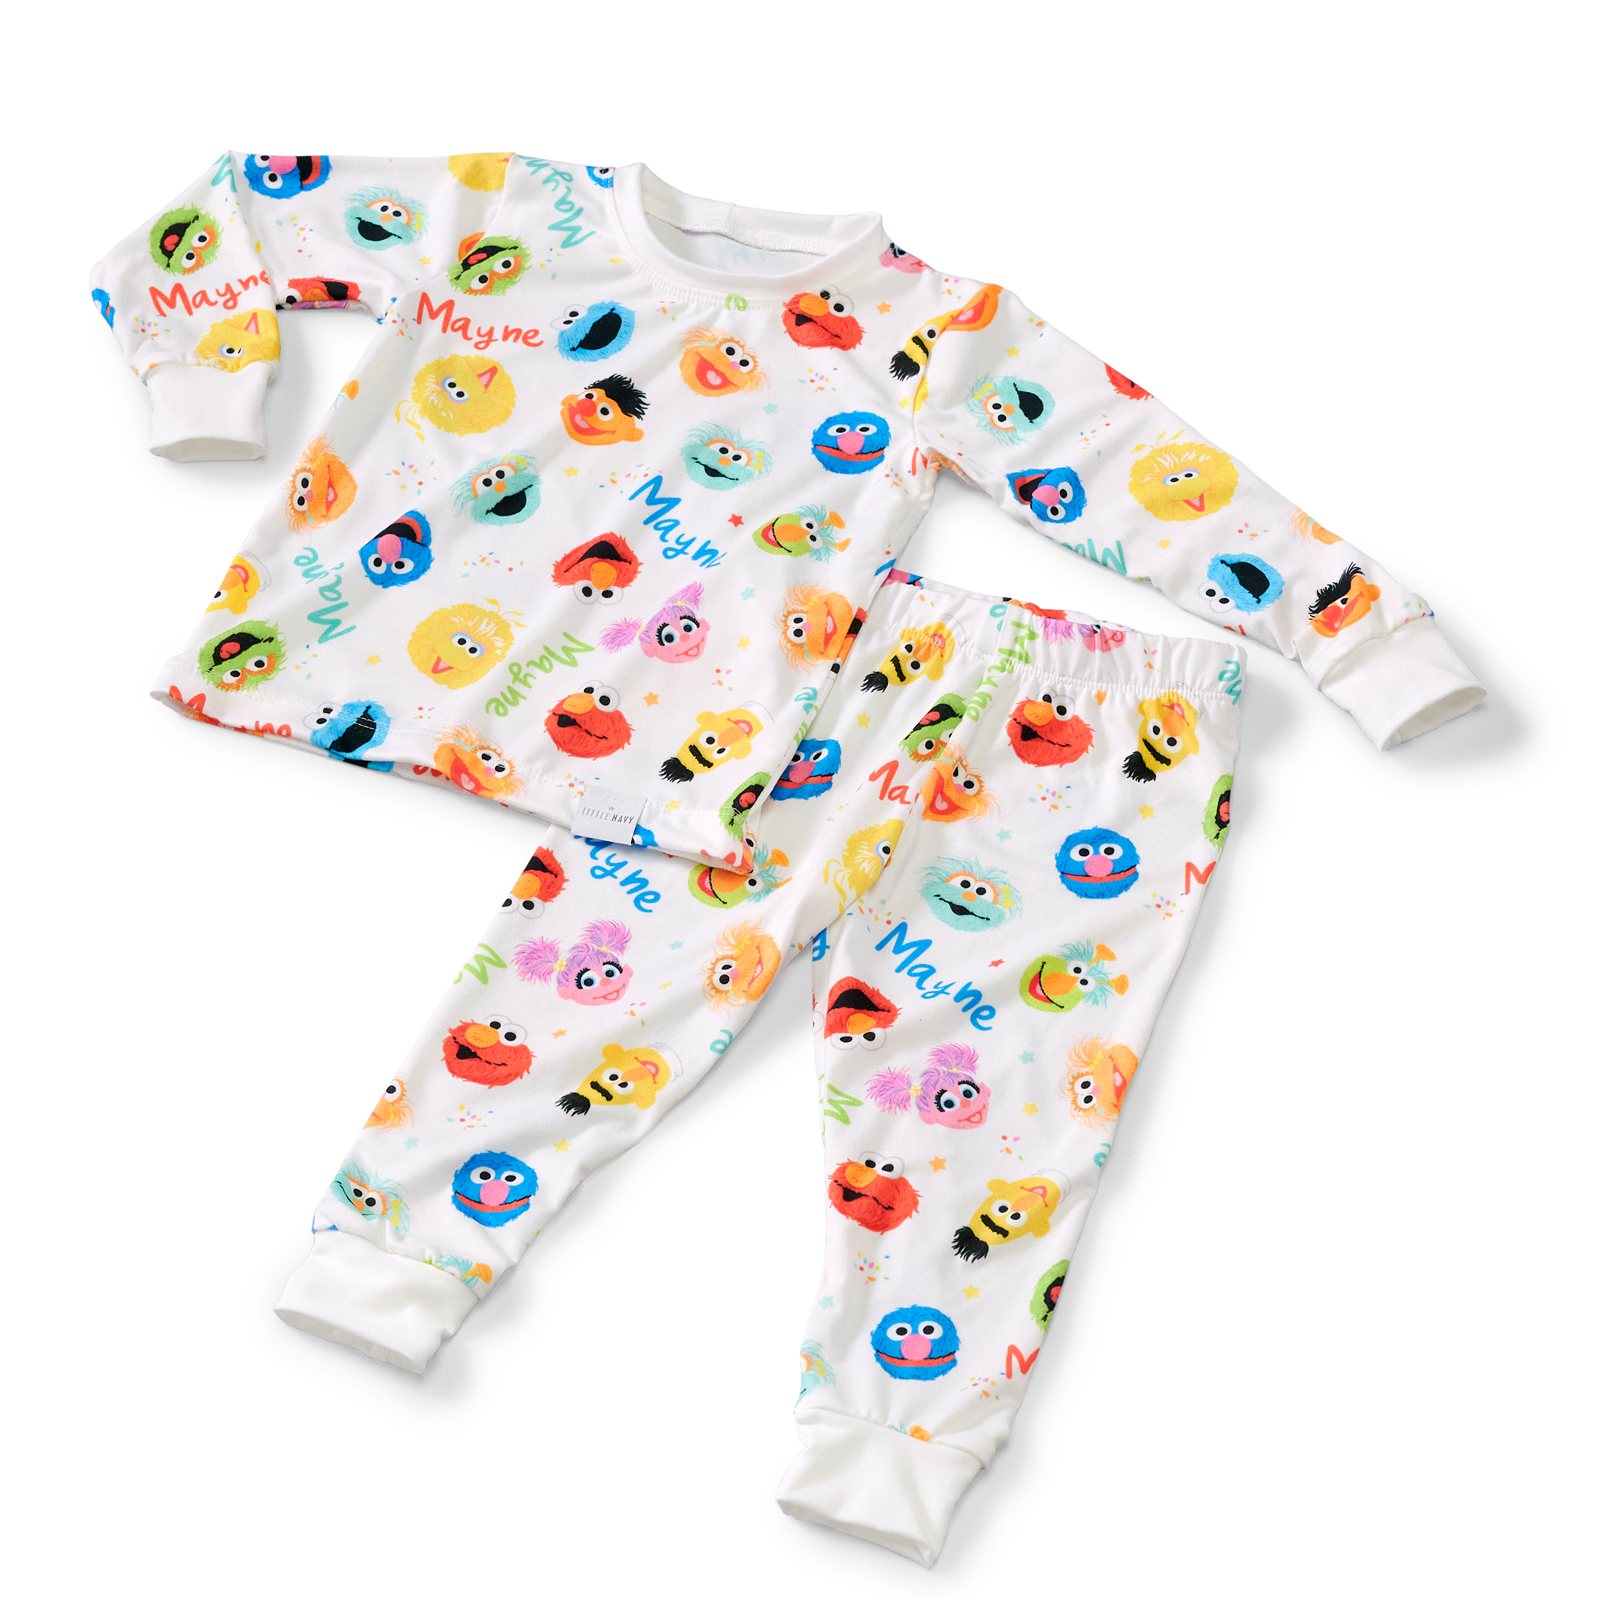 Sesame Street - Personalized Pyjamas